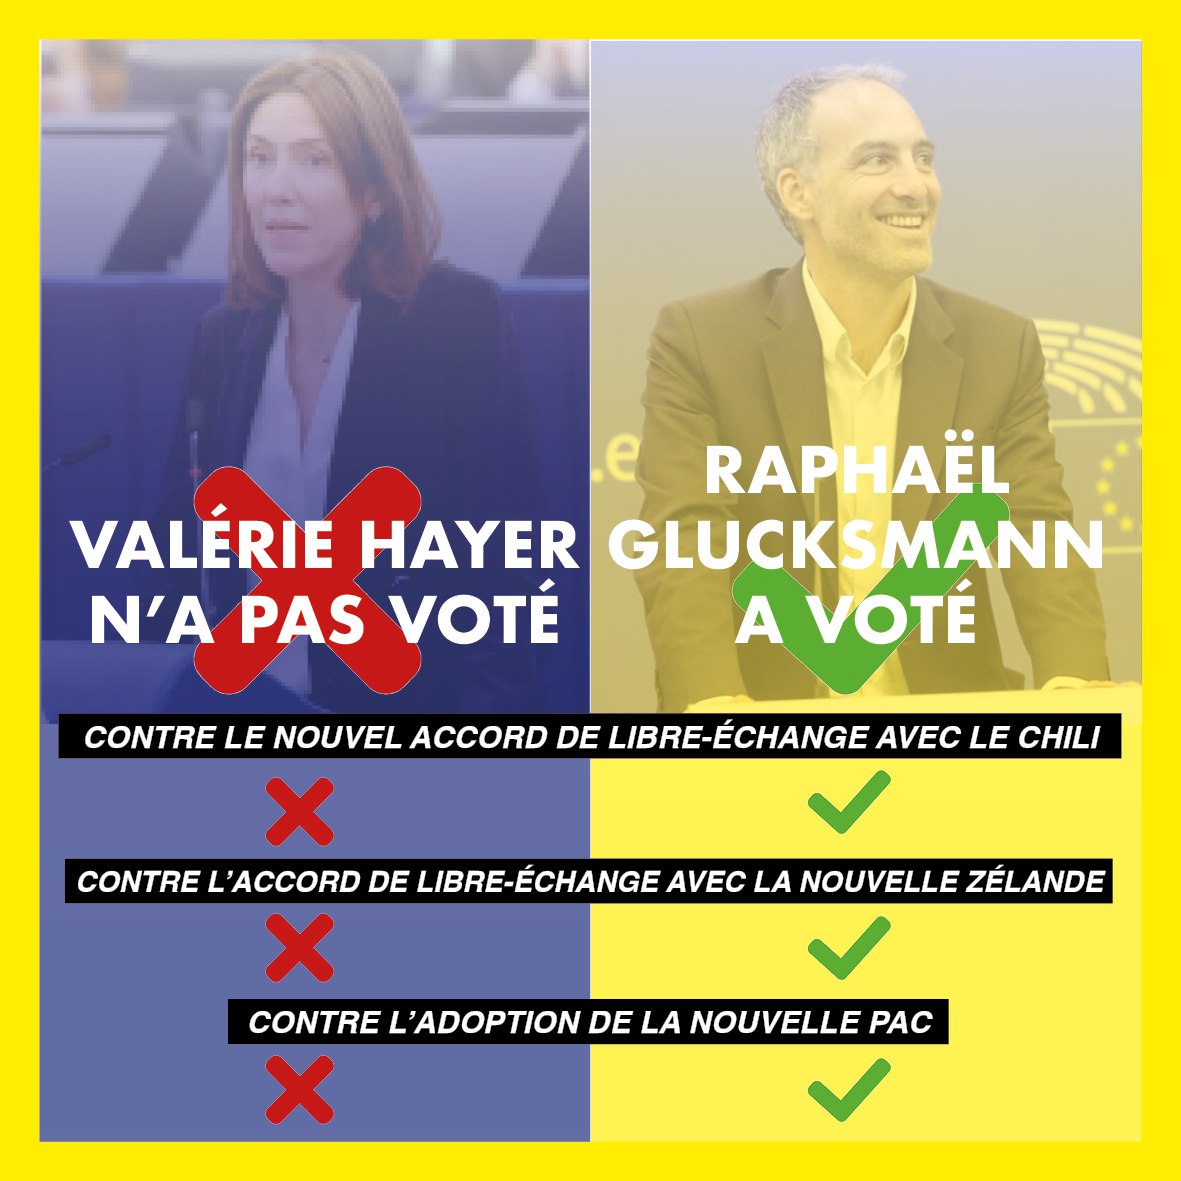 @rglucks1 🚨@ValerieHayer n'a pas voté ça.
Et Valérie #Hayer ne semble même pas avoir honte...
#Mercosur #Droitdesauver #devoirdevigilance #viol #libreechange #AgriculteursEnColere